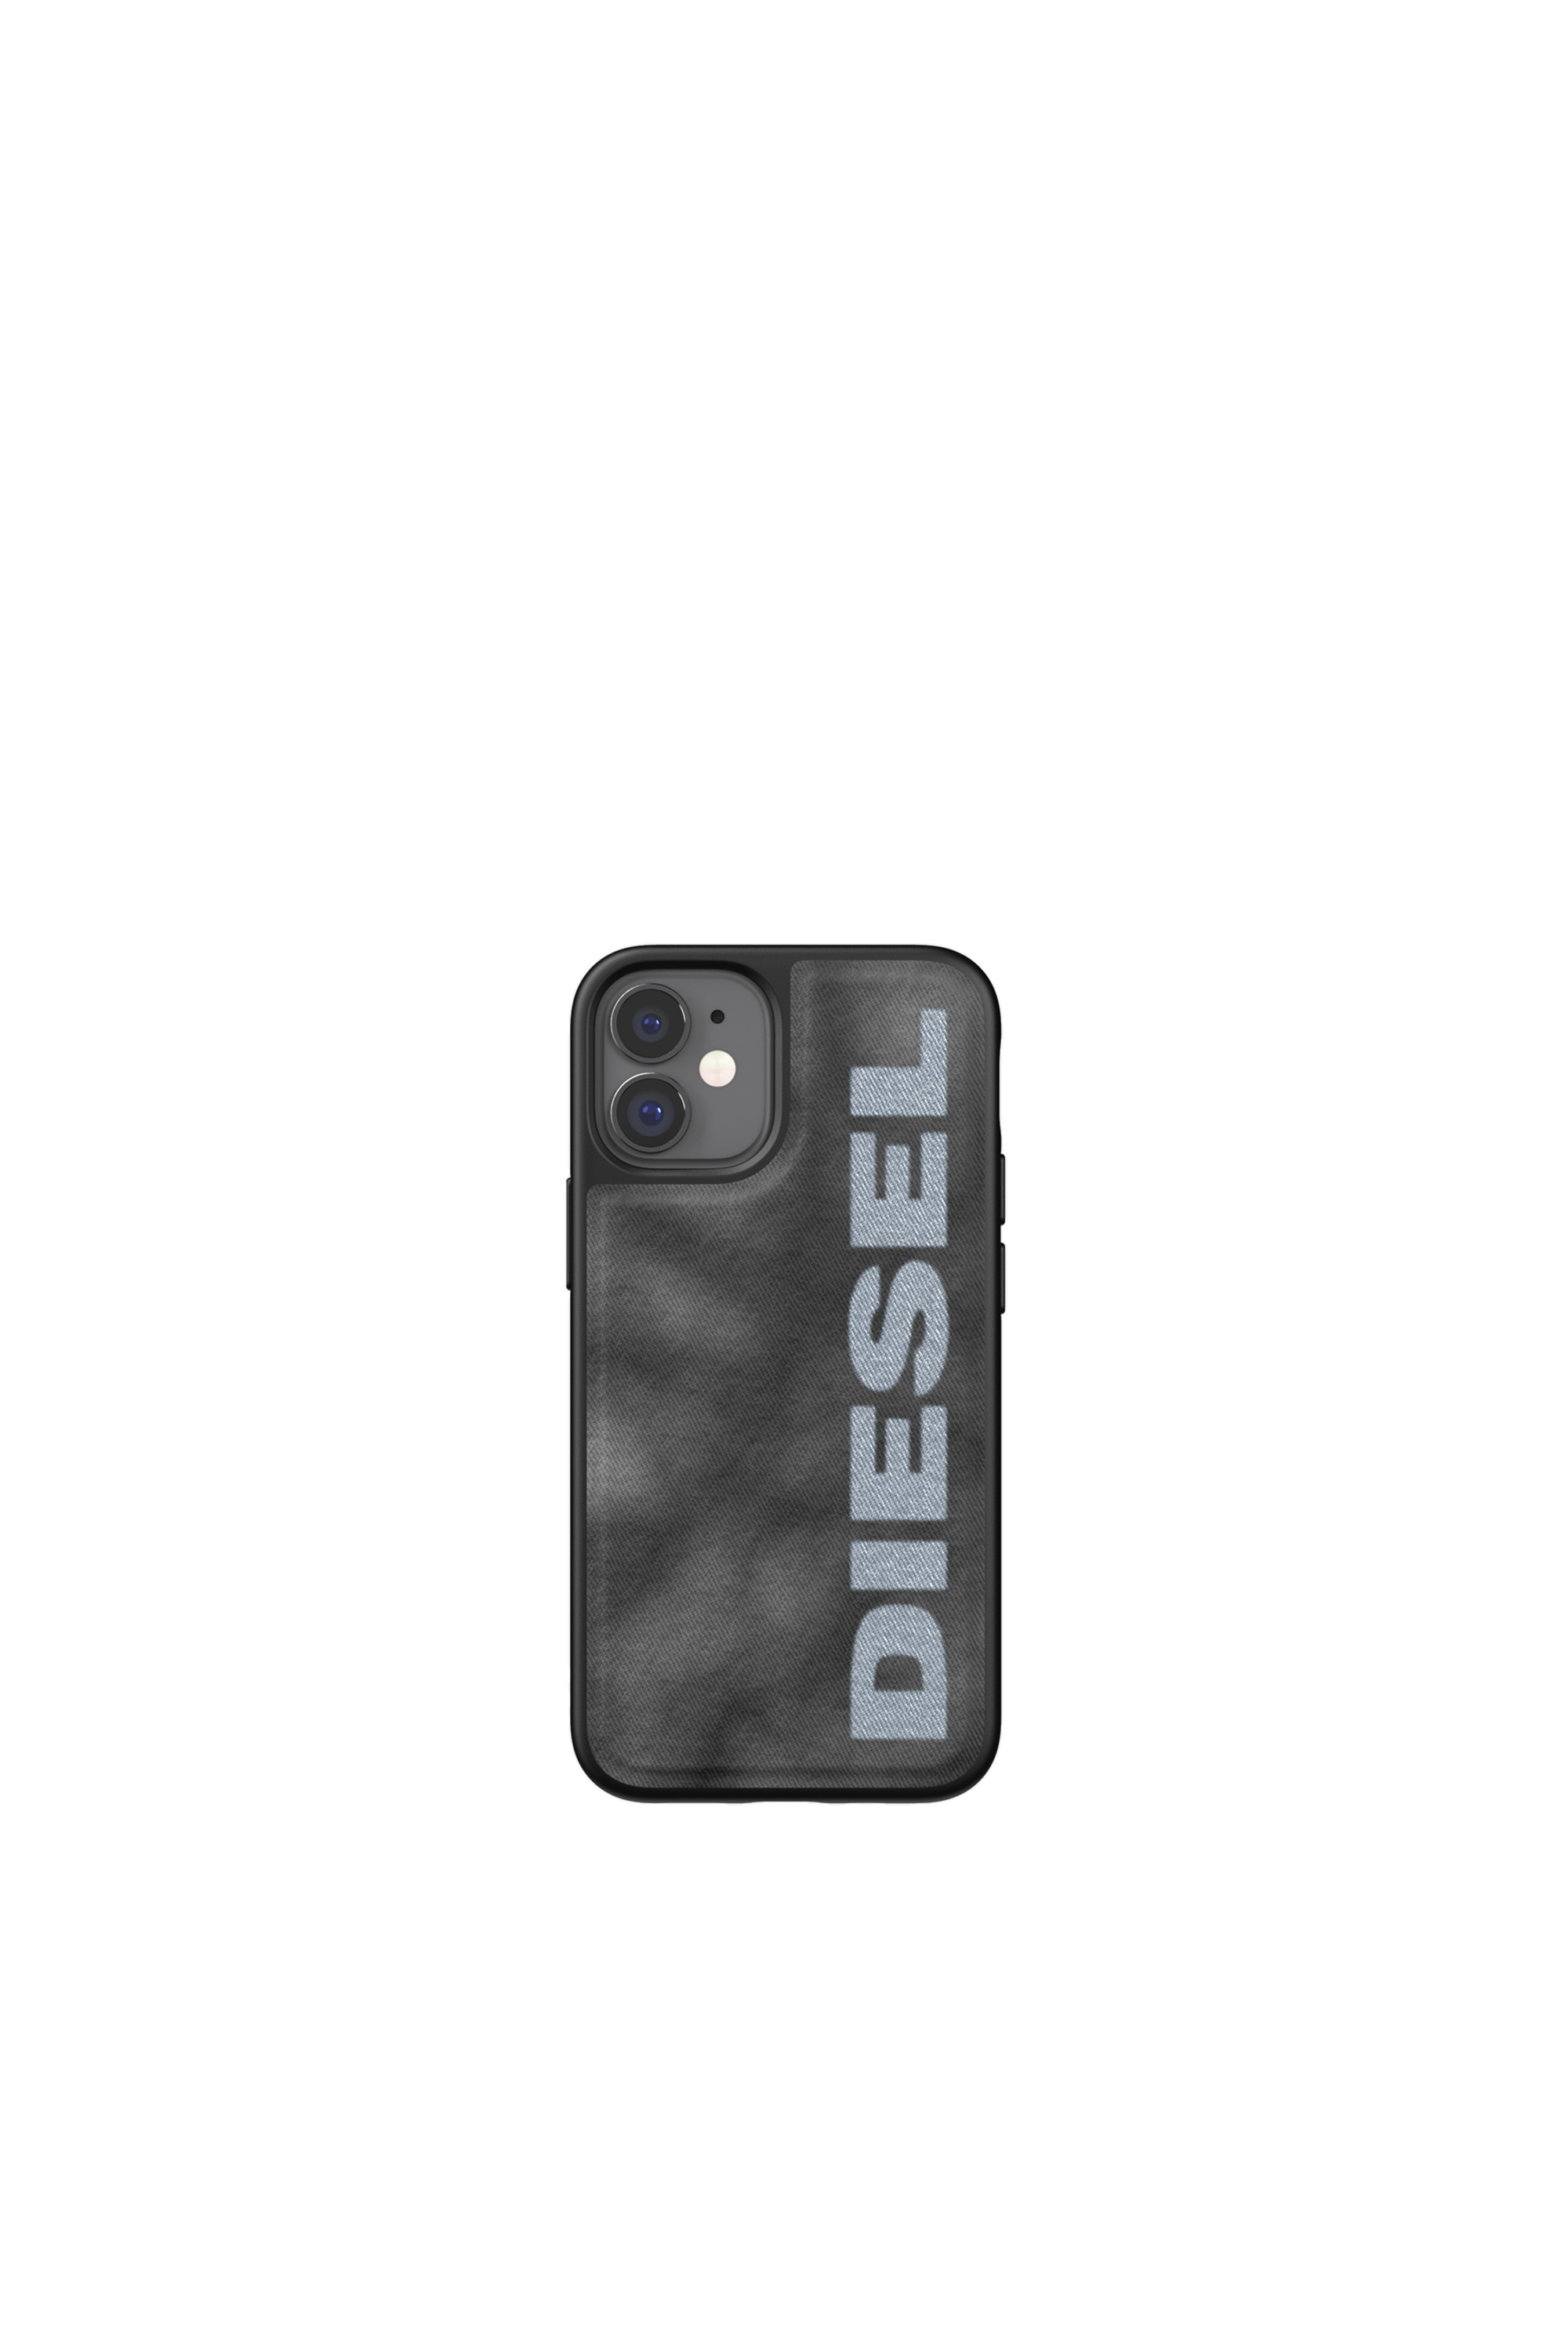 Diesel - 44296  STANDARD CASES, Black/Grey - Image 2